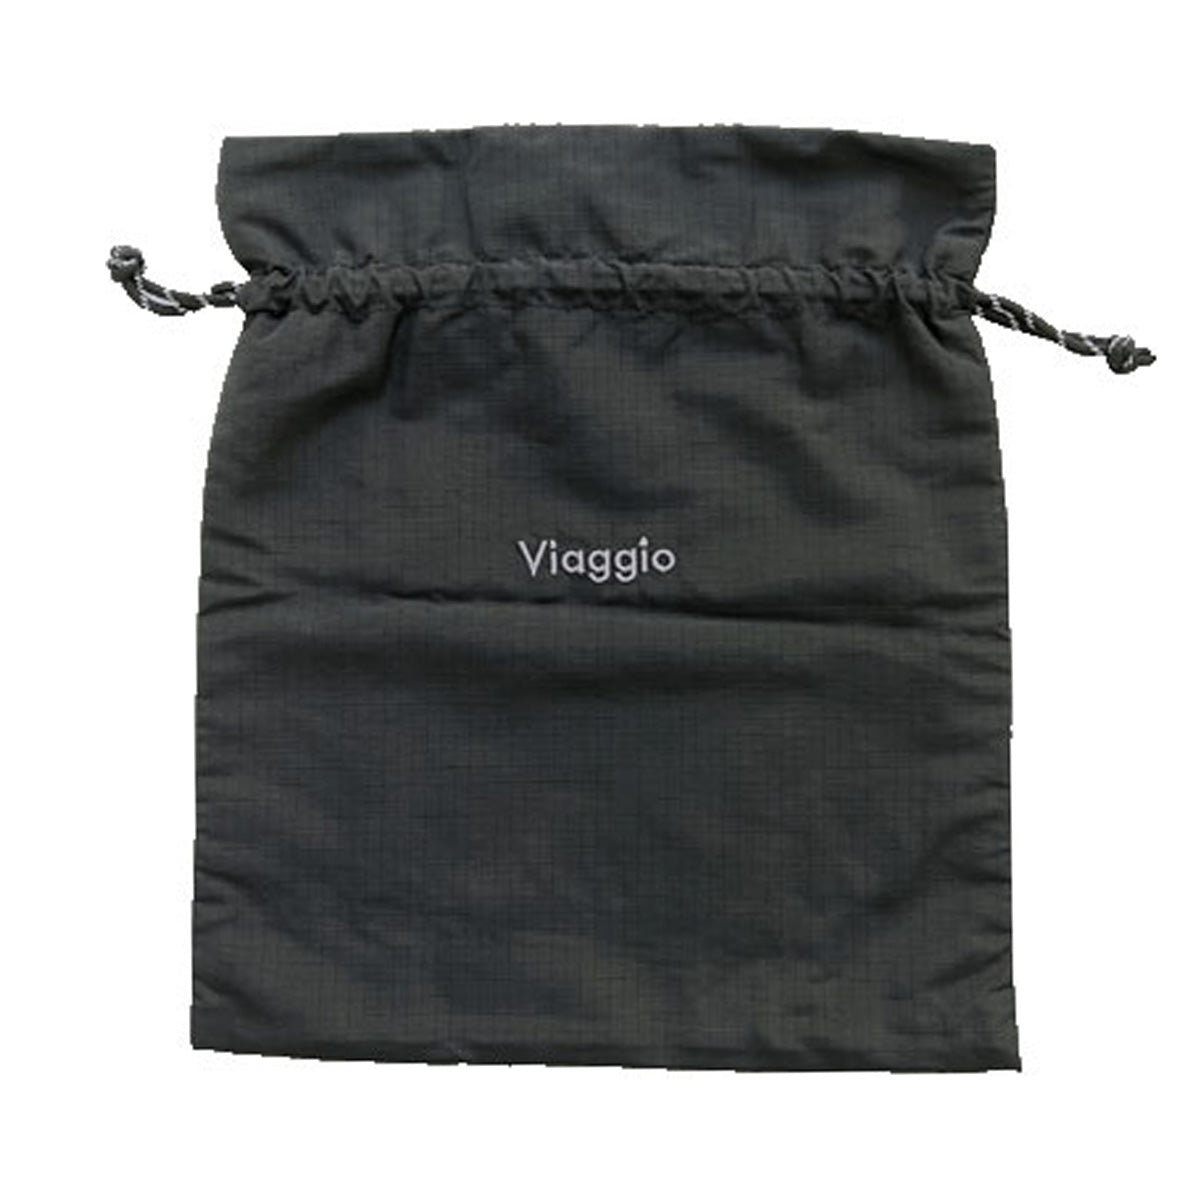 巾着袋 バッグインバッグ 巾着バッグ BG0029 D 刺繍付き巾着 H35×W30cm 351621